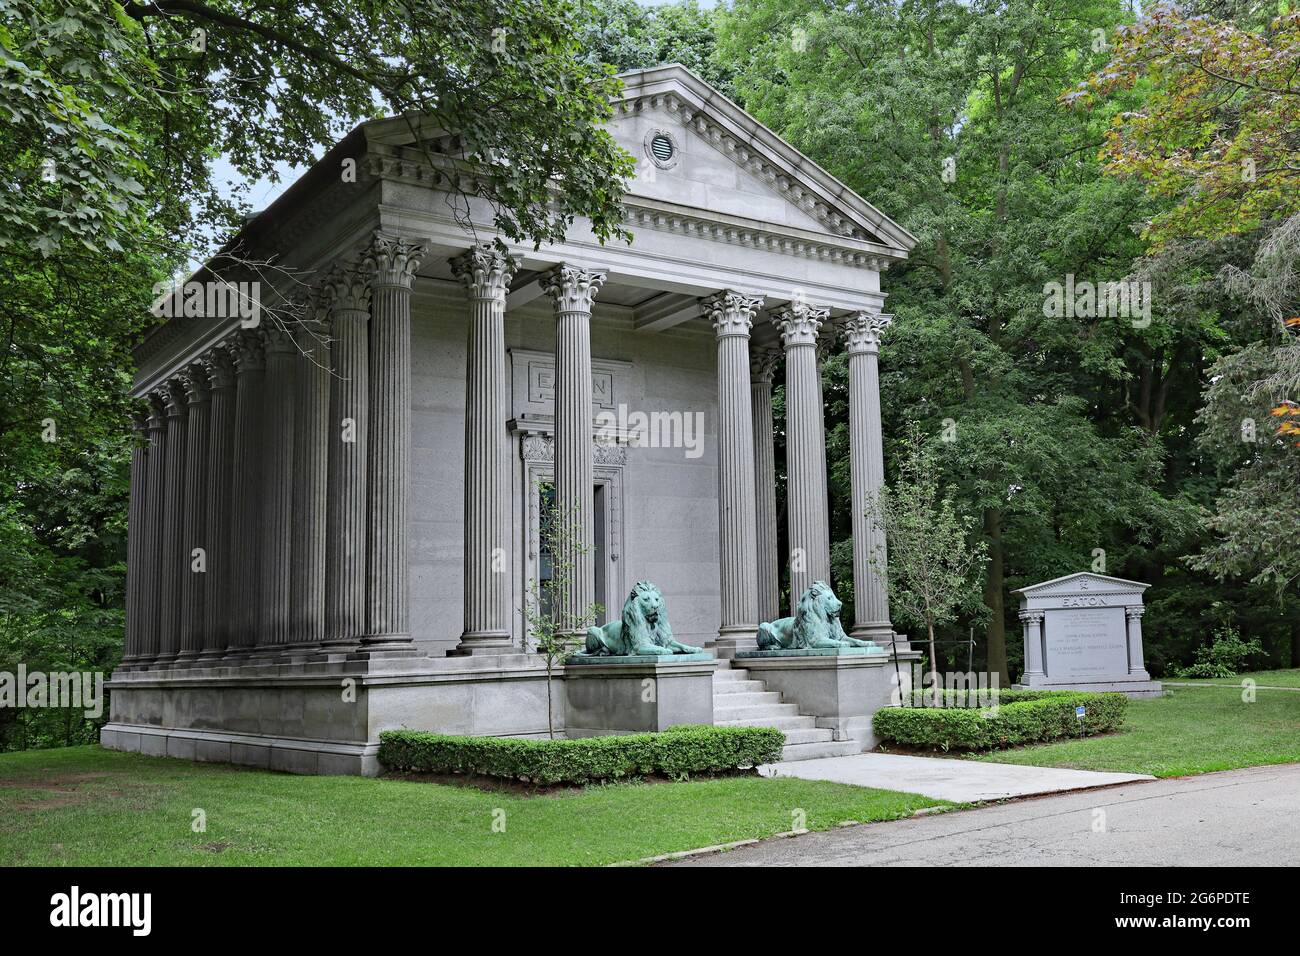 Gran mausoleo de estilo clásico de una familia rica, custodiada por leones, en el cementerio Mount Pleasant, Toronto Foto de stock